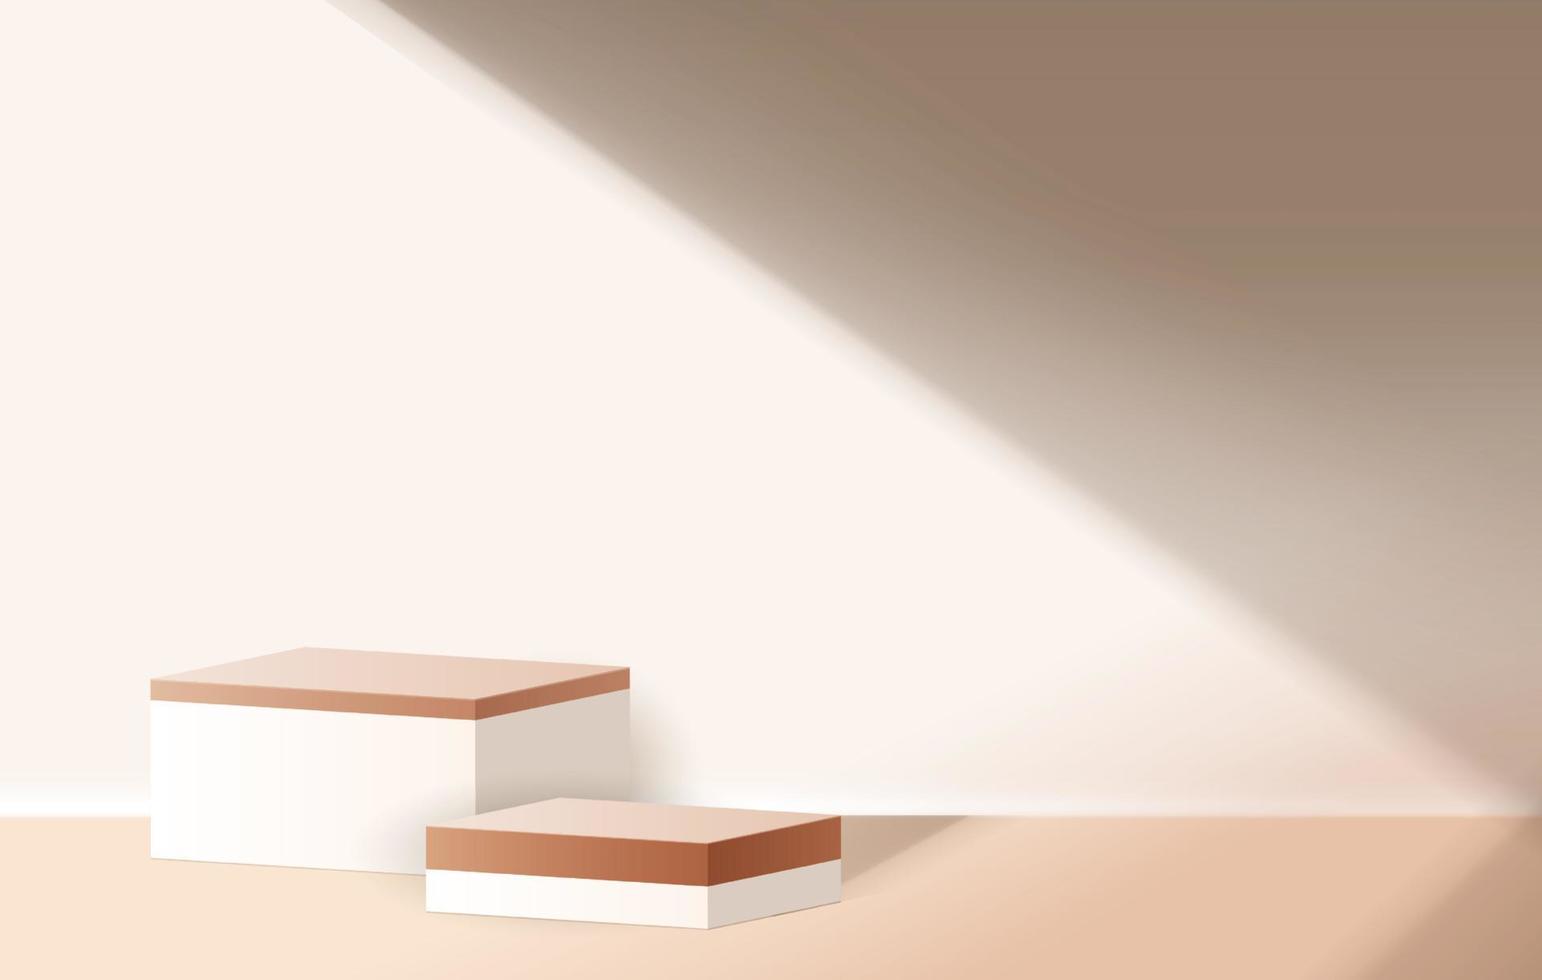 fondo minimale cosmetico marrone e display podio premium in marmo terrazzo per la presentazione del prodotto, il marchio e la presentazione dell'imballaggio. palco in studio con ombra di sfondo foglia. disegno vettoriale